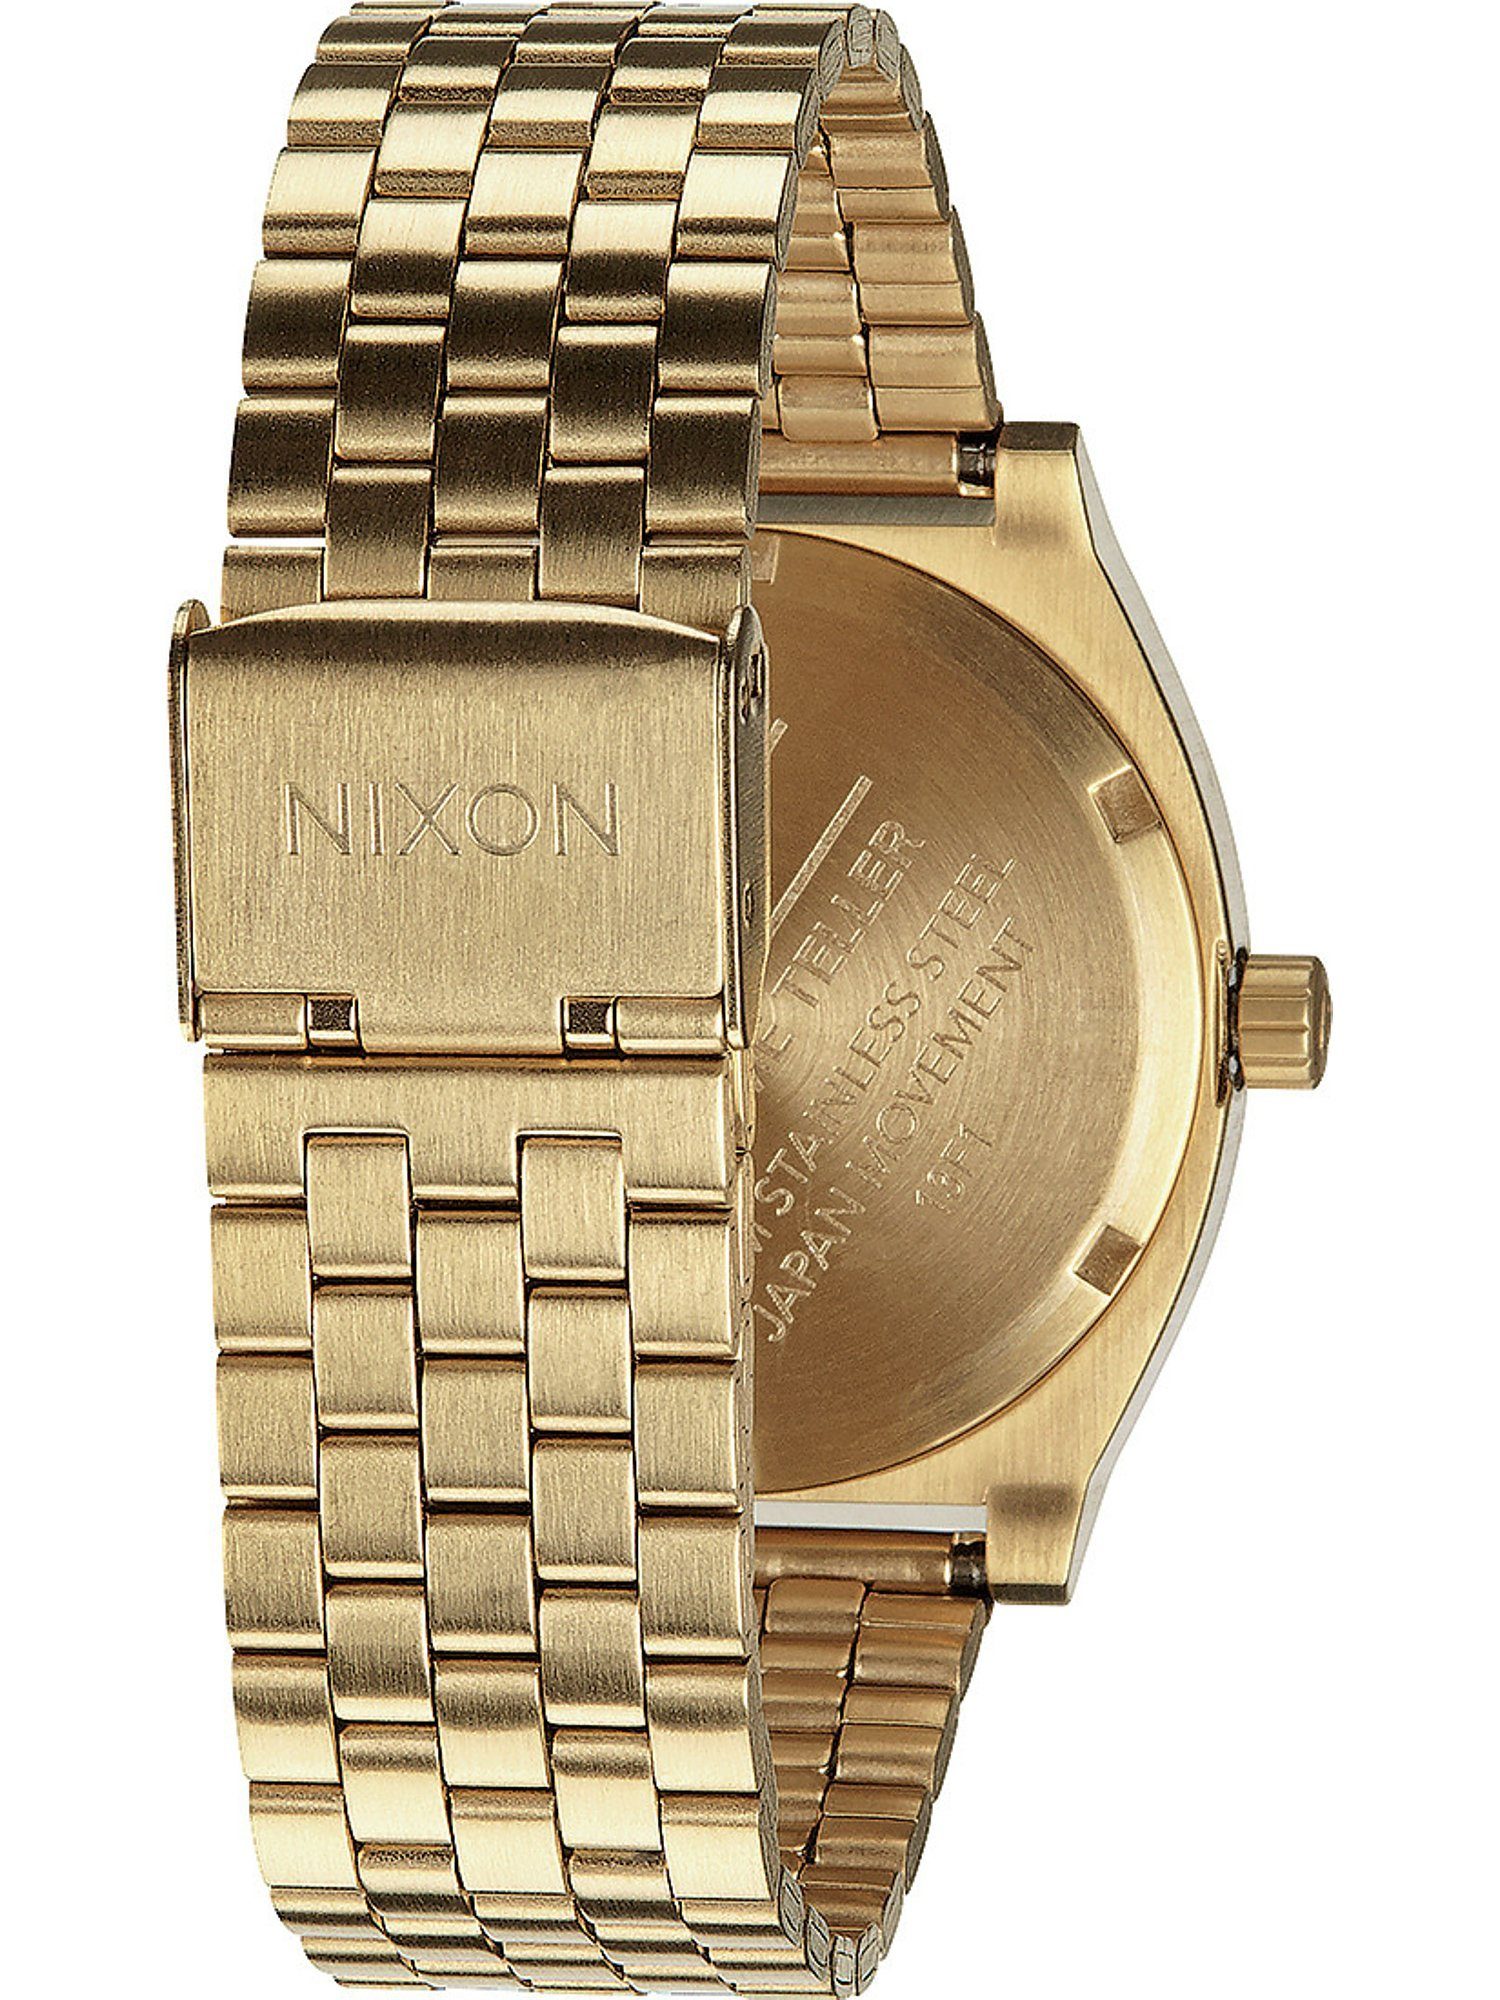 Quarz Uhren Nixon Nixon Quarzuhr Analog gold/grün